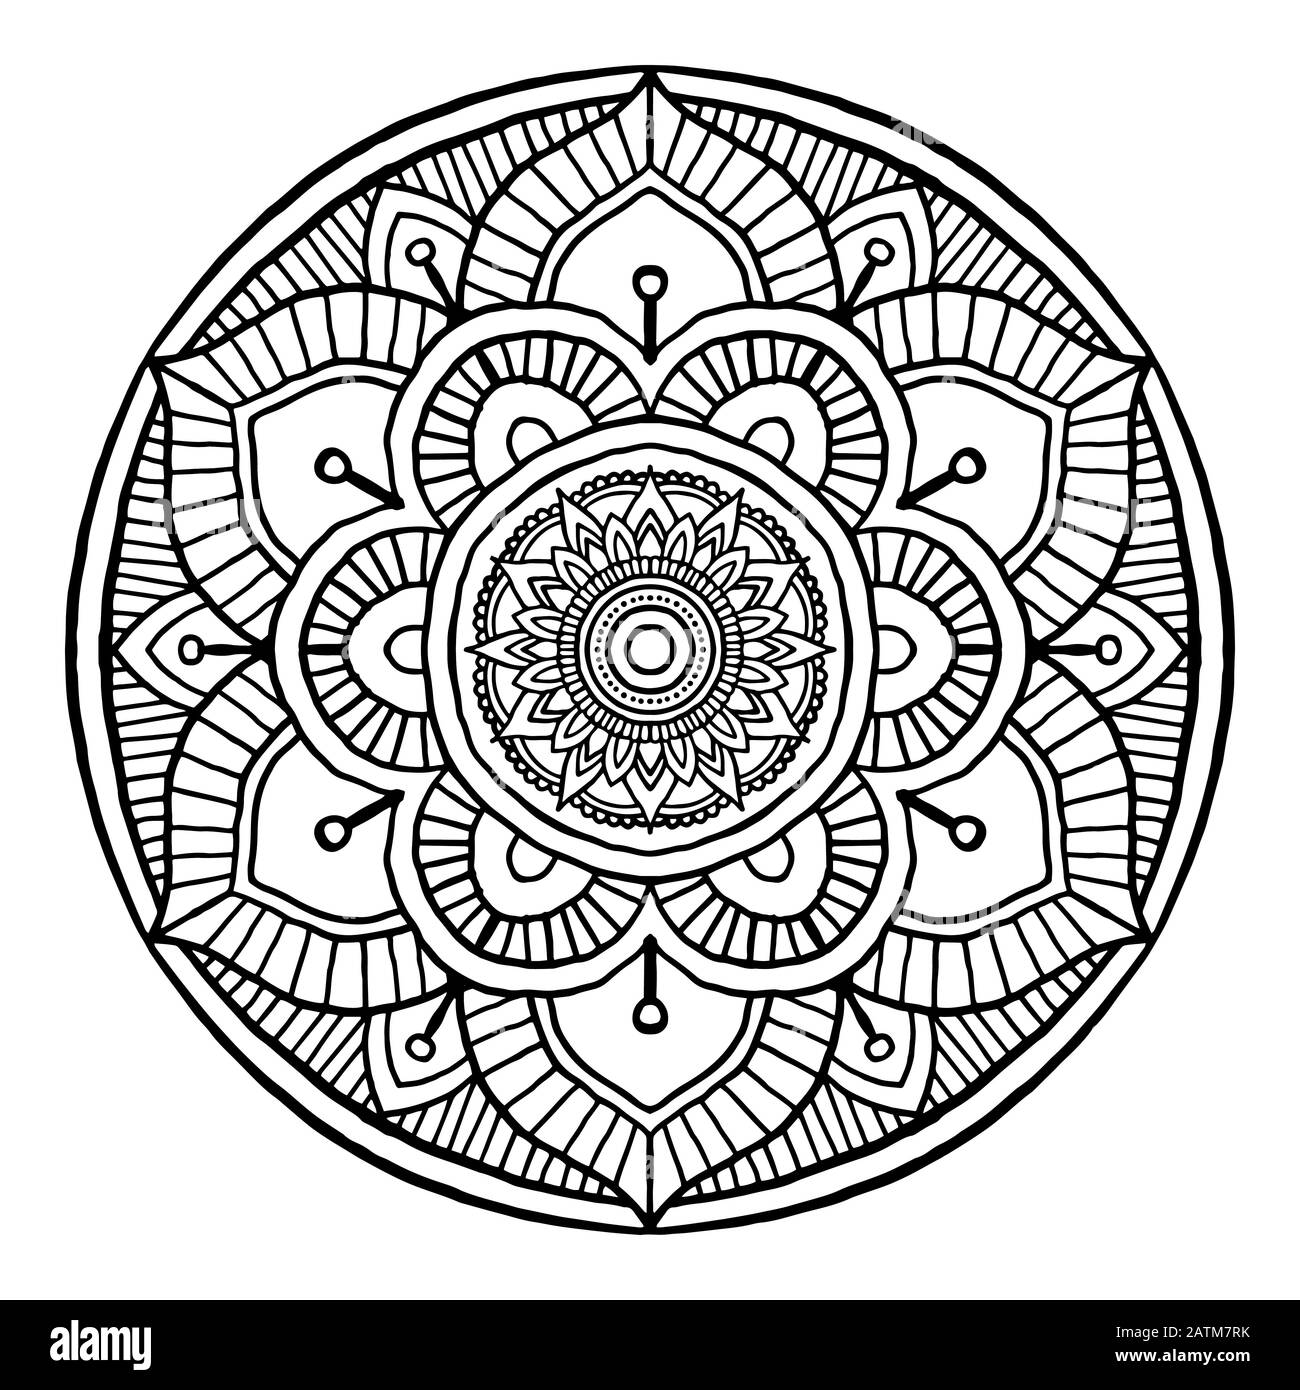 Contour Mandala décoratif rond ornement, peut être utilisé pour le livre de coloriage, la thérapie anti-stress, carte de vœux, l'imprimé de téléphone, etc. Dessin À La Main Illustration de Vecteur